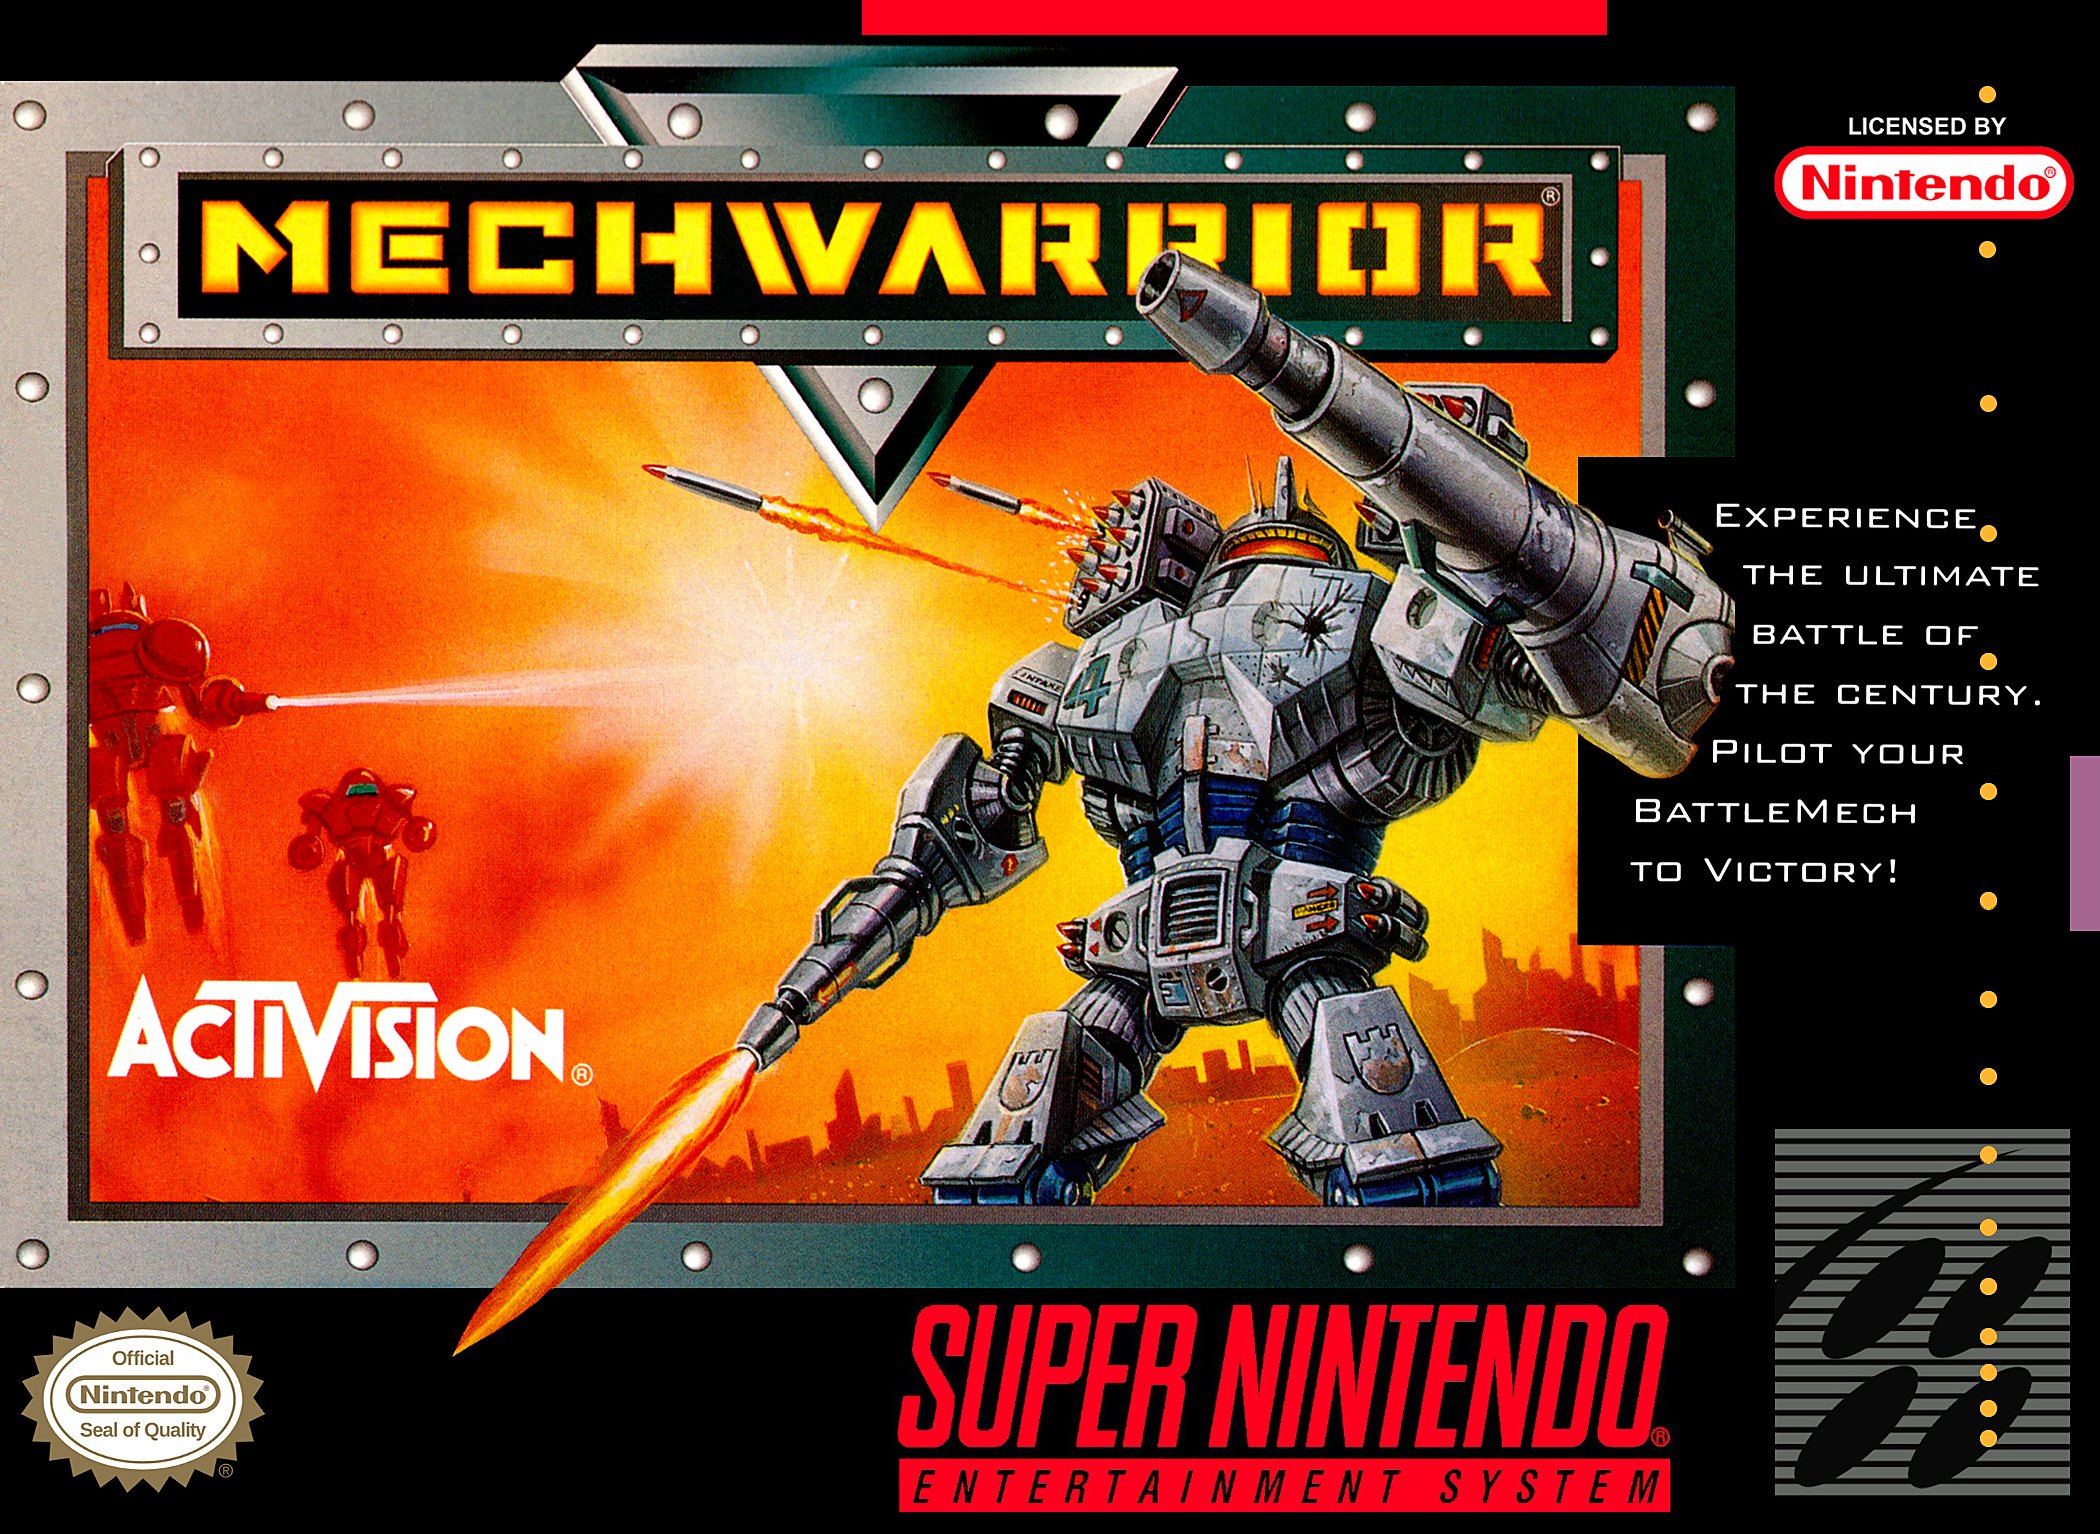 mechwarrior, Battletech, Online, Warrior, Mecha, Robot, Sci fi, 1mechw, Action, Fighting, Mech, Poster Wallpaper